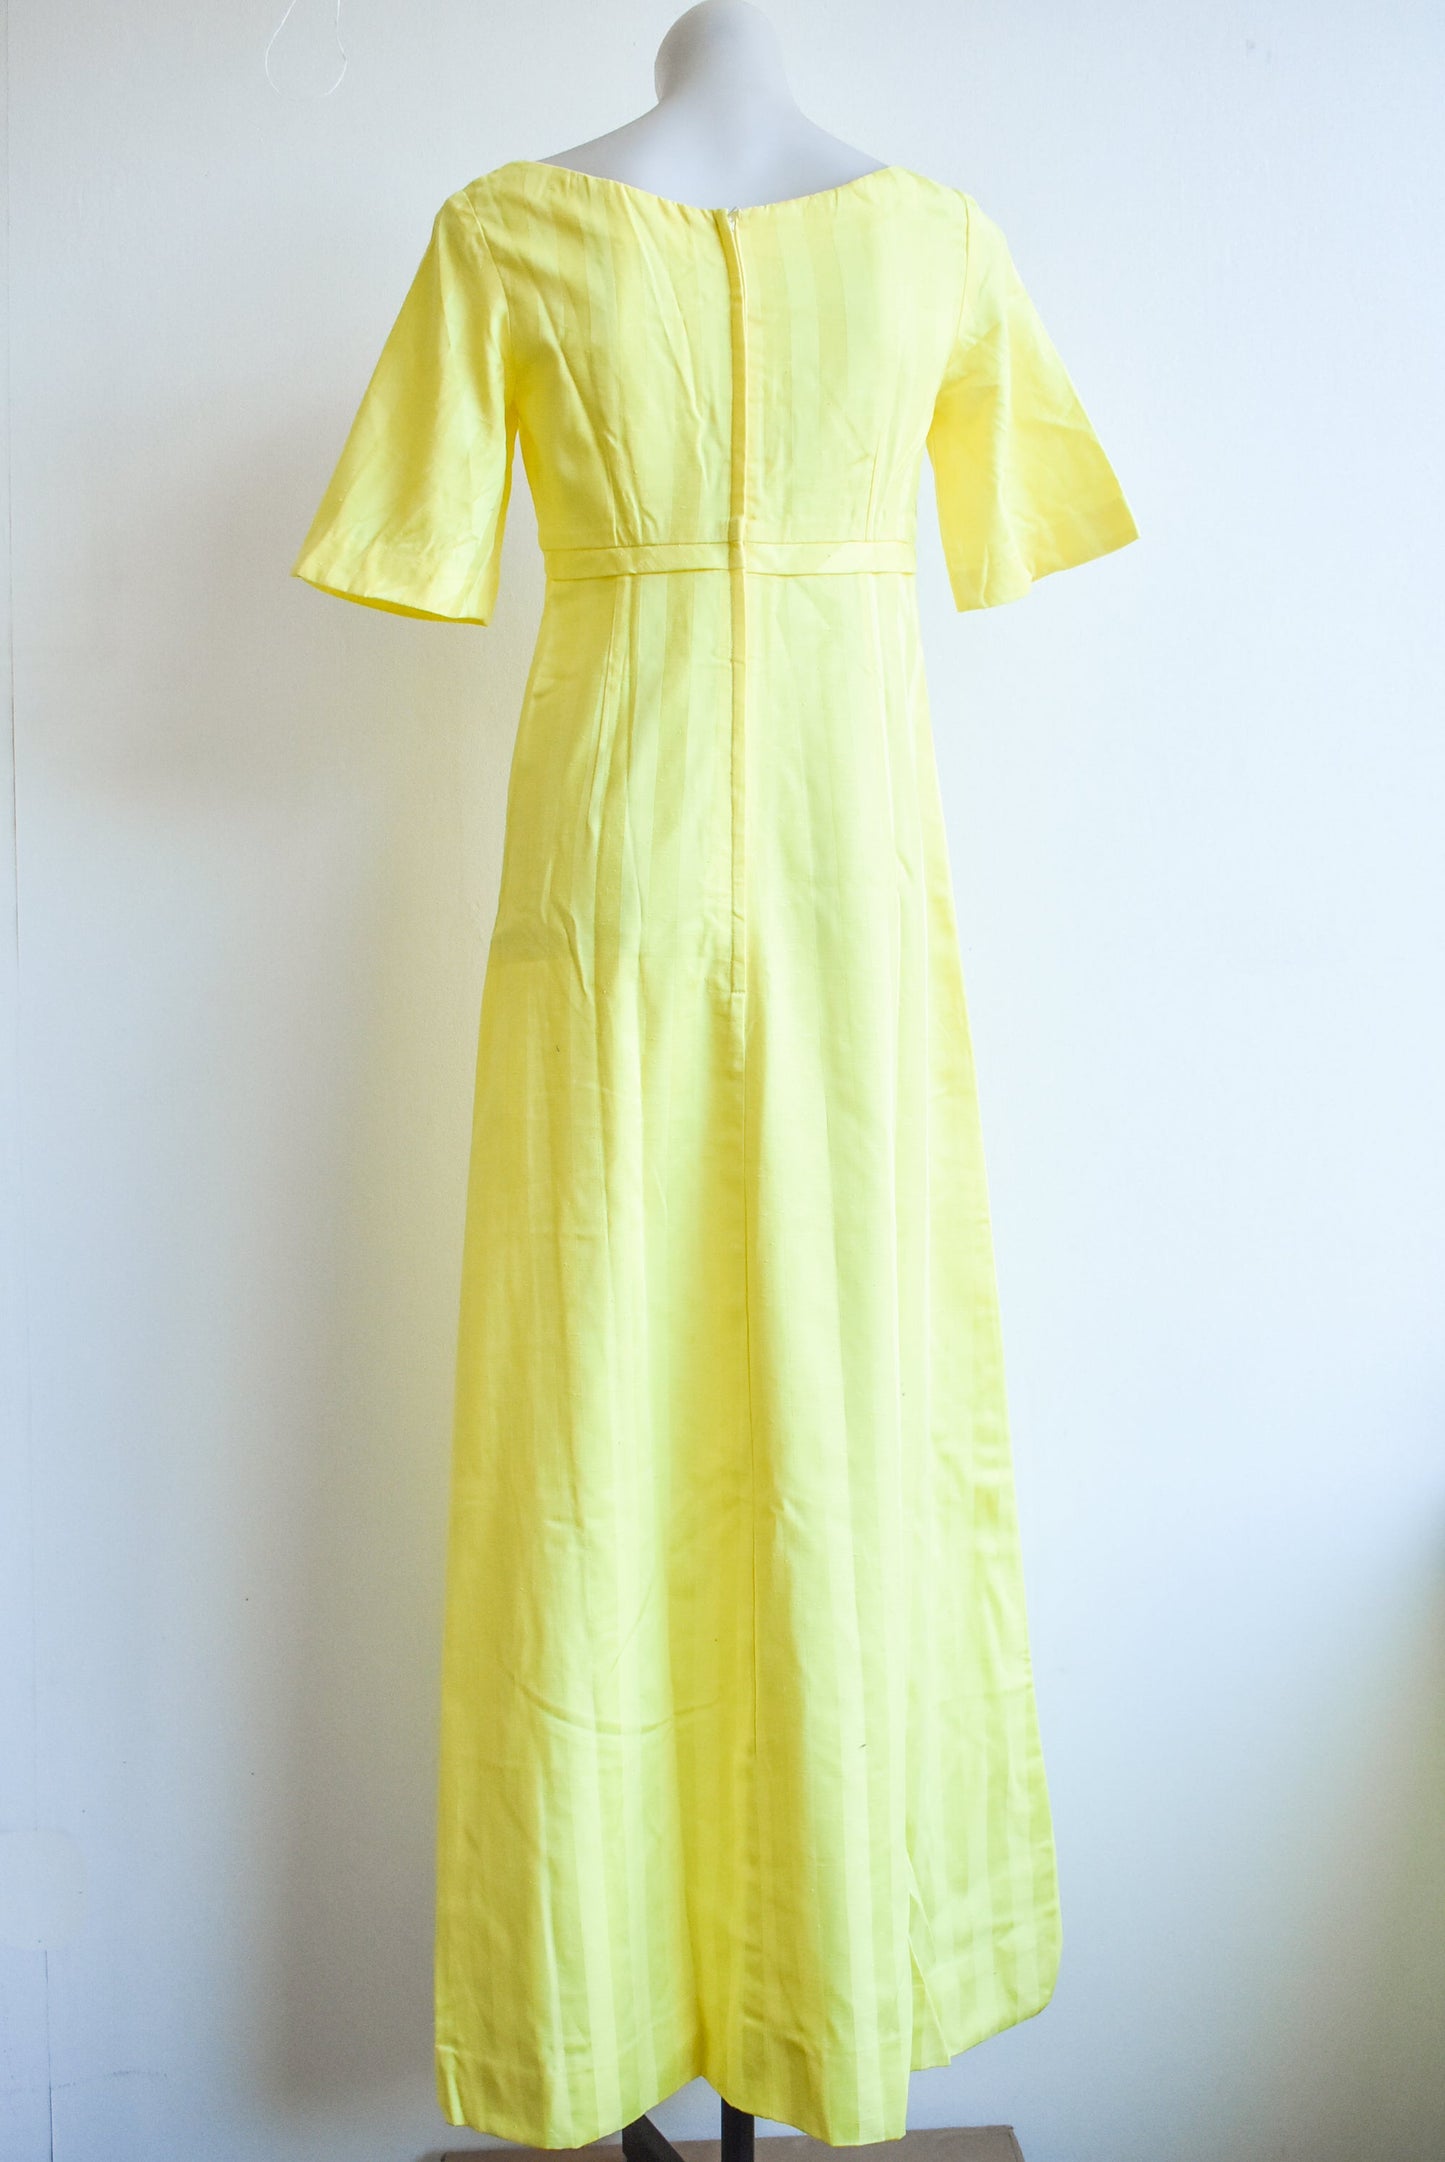 1960's bright yellow dress, size XS